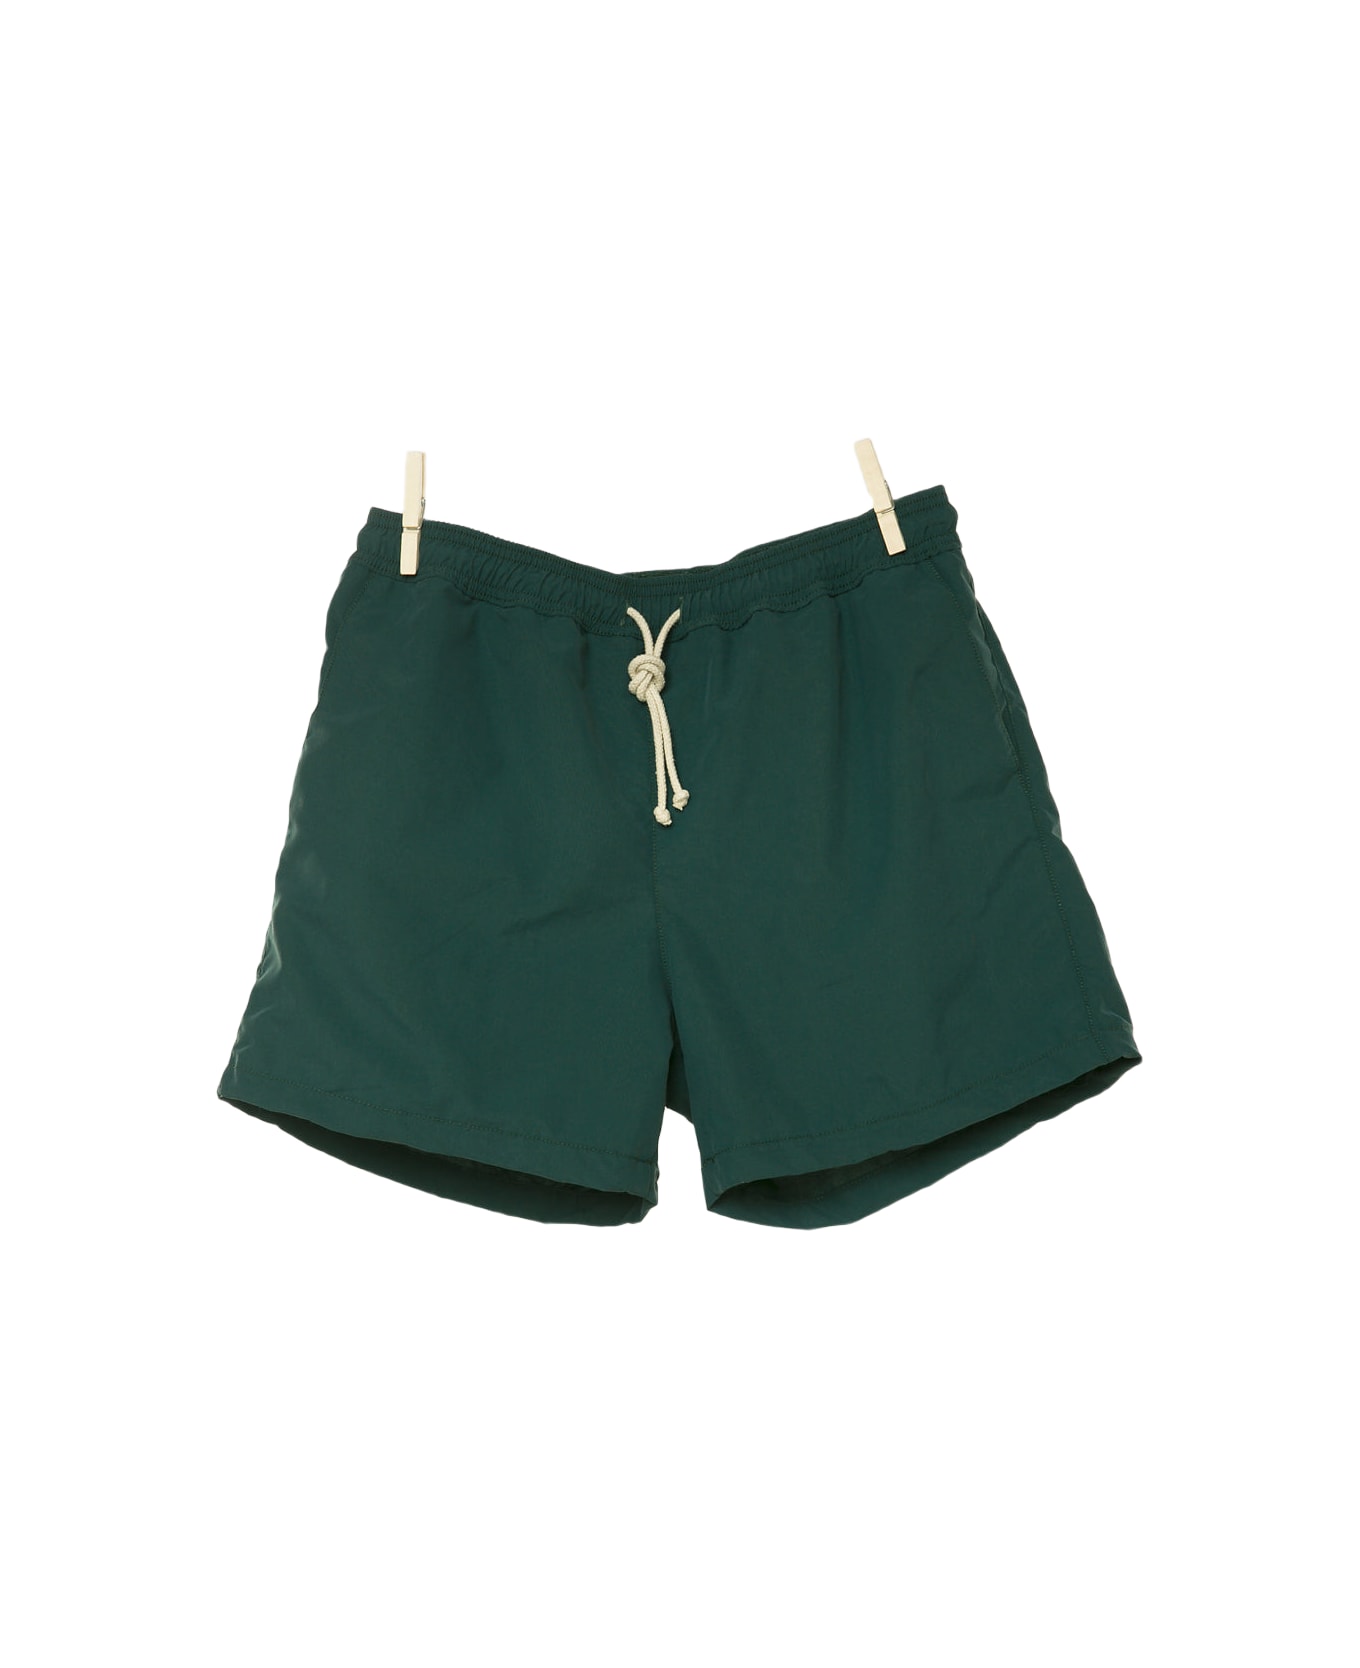 Ripa Ripa Verde Pino Swim Shorts - Green スイムトランクス